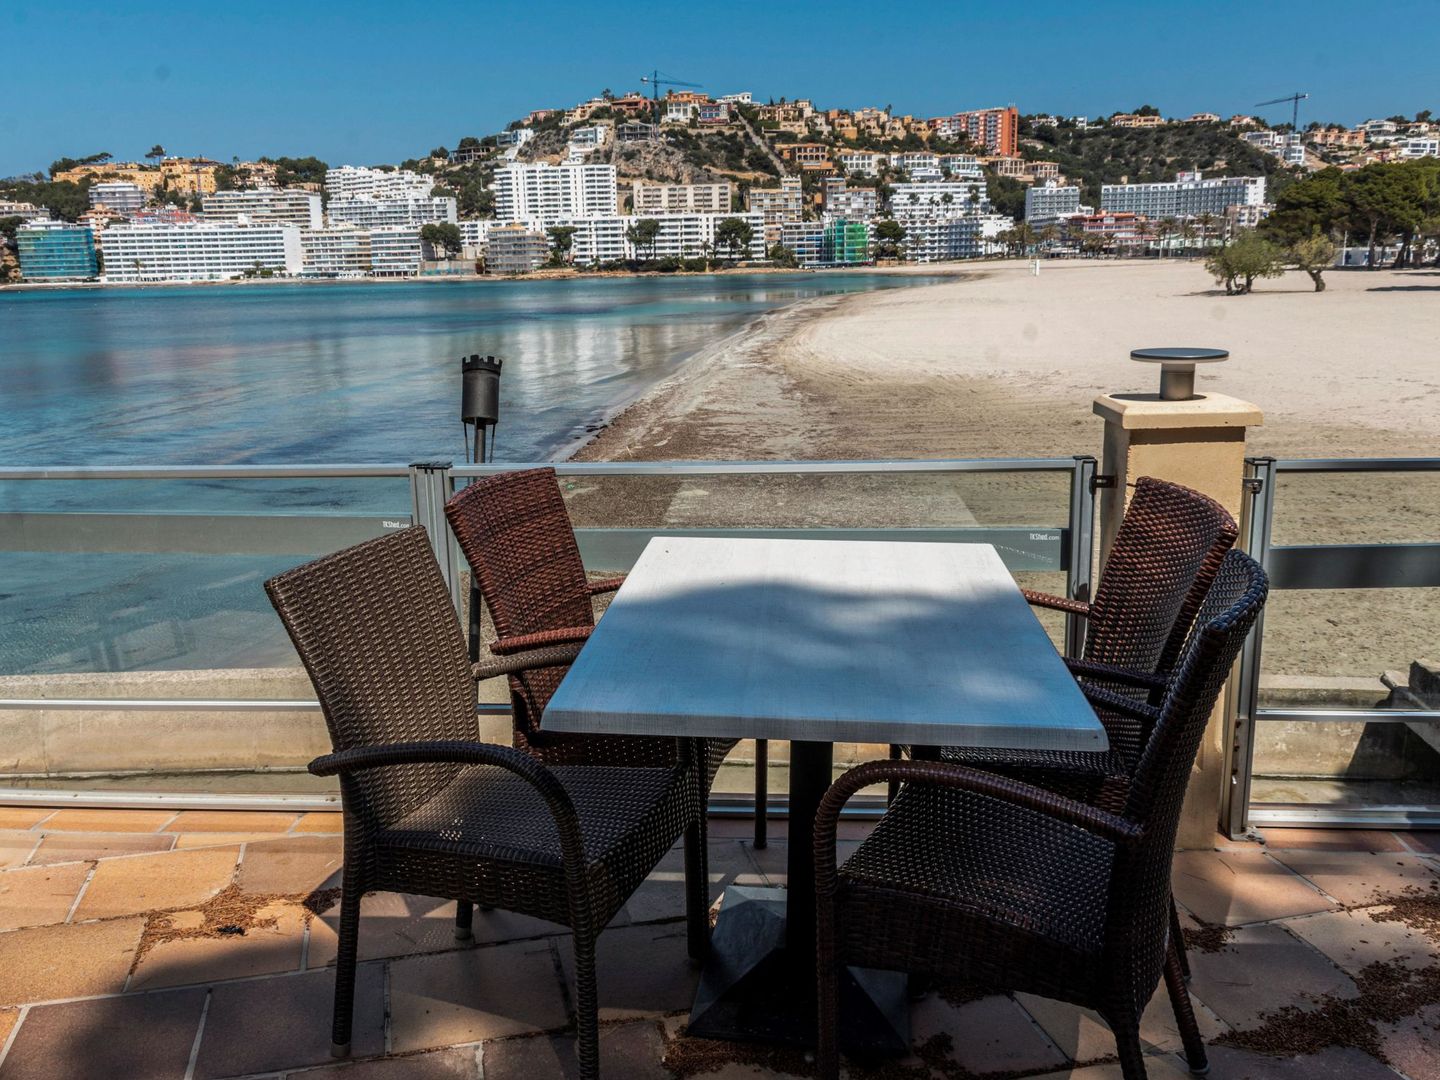 Terraza de un restaurante cerrado con vistas a la playa de Santa Ponça. (EFE)